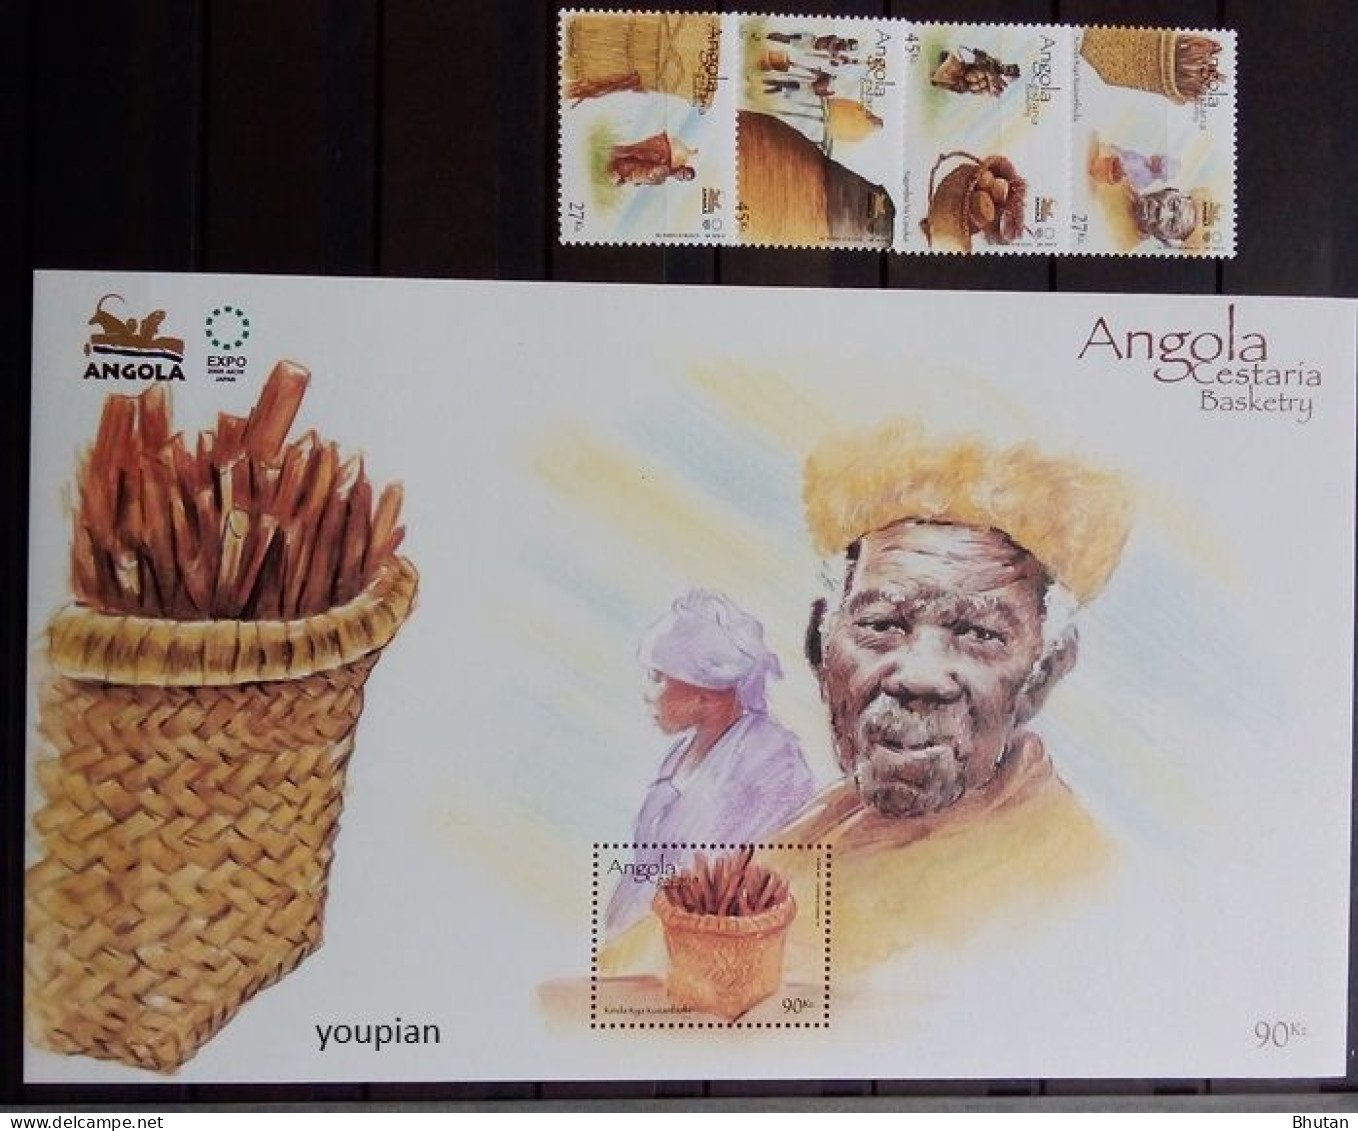 Angola 2005, EXPO 2005 - Basketry, MNH S/S And Stamps Set - Angola